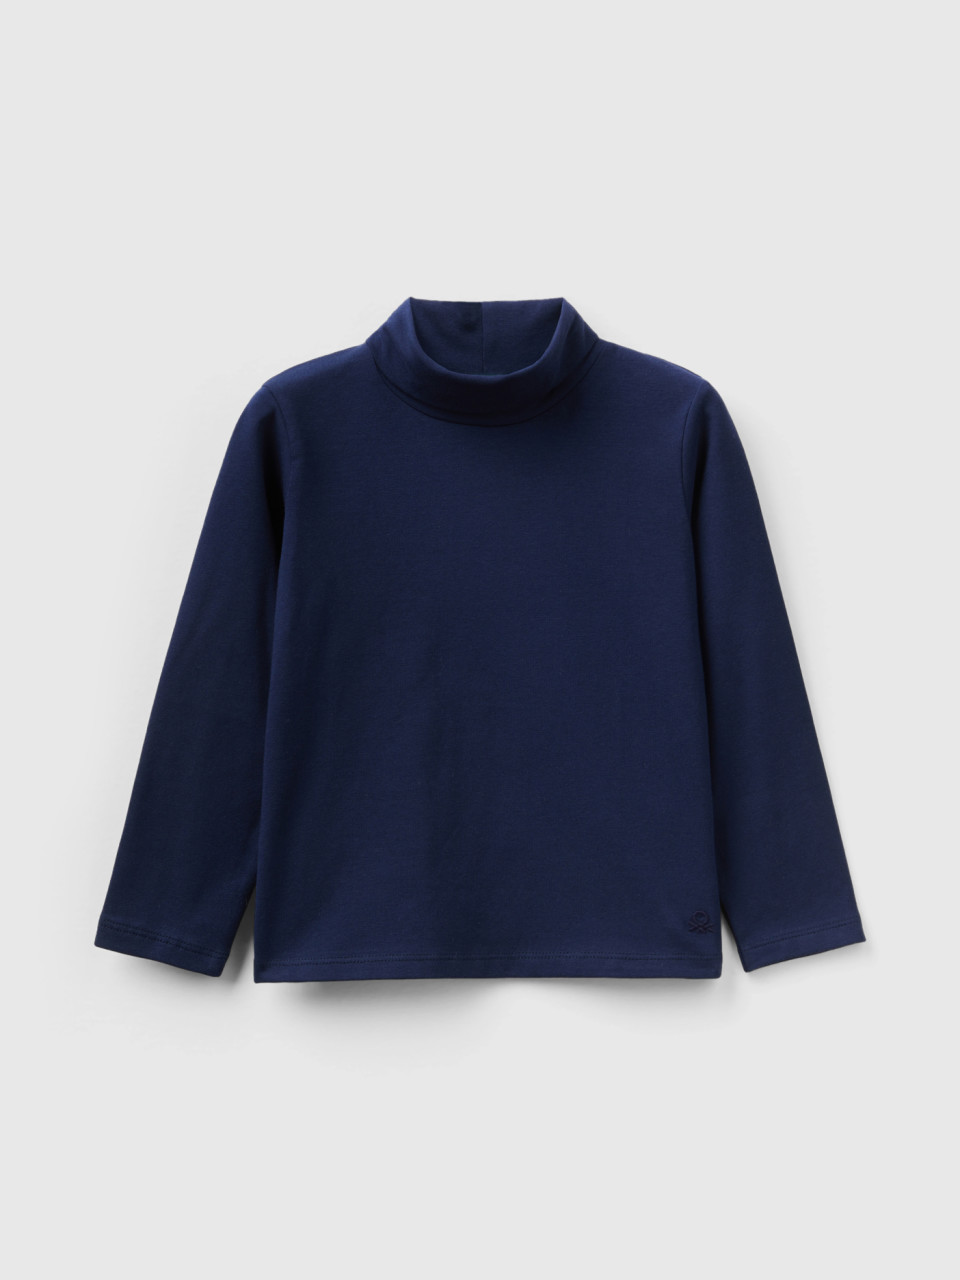 Benetton, Turtleneck T-shirt In Stretch Cotton, Dark Blue, Kids